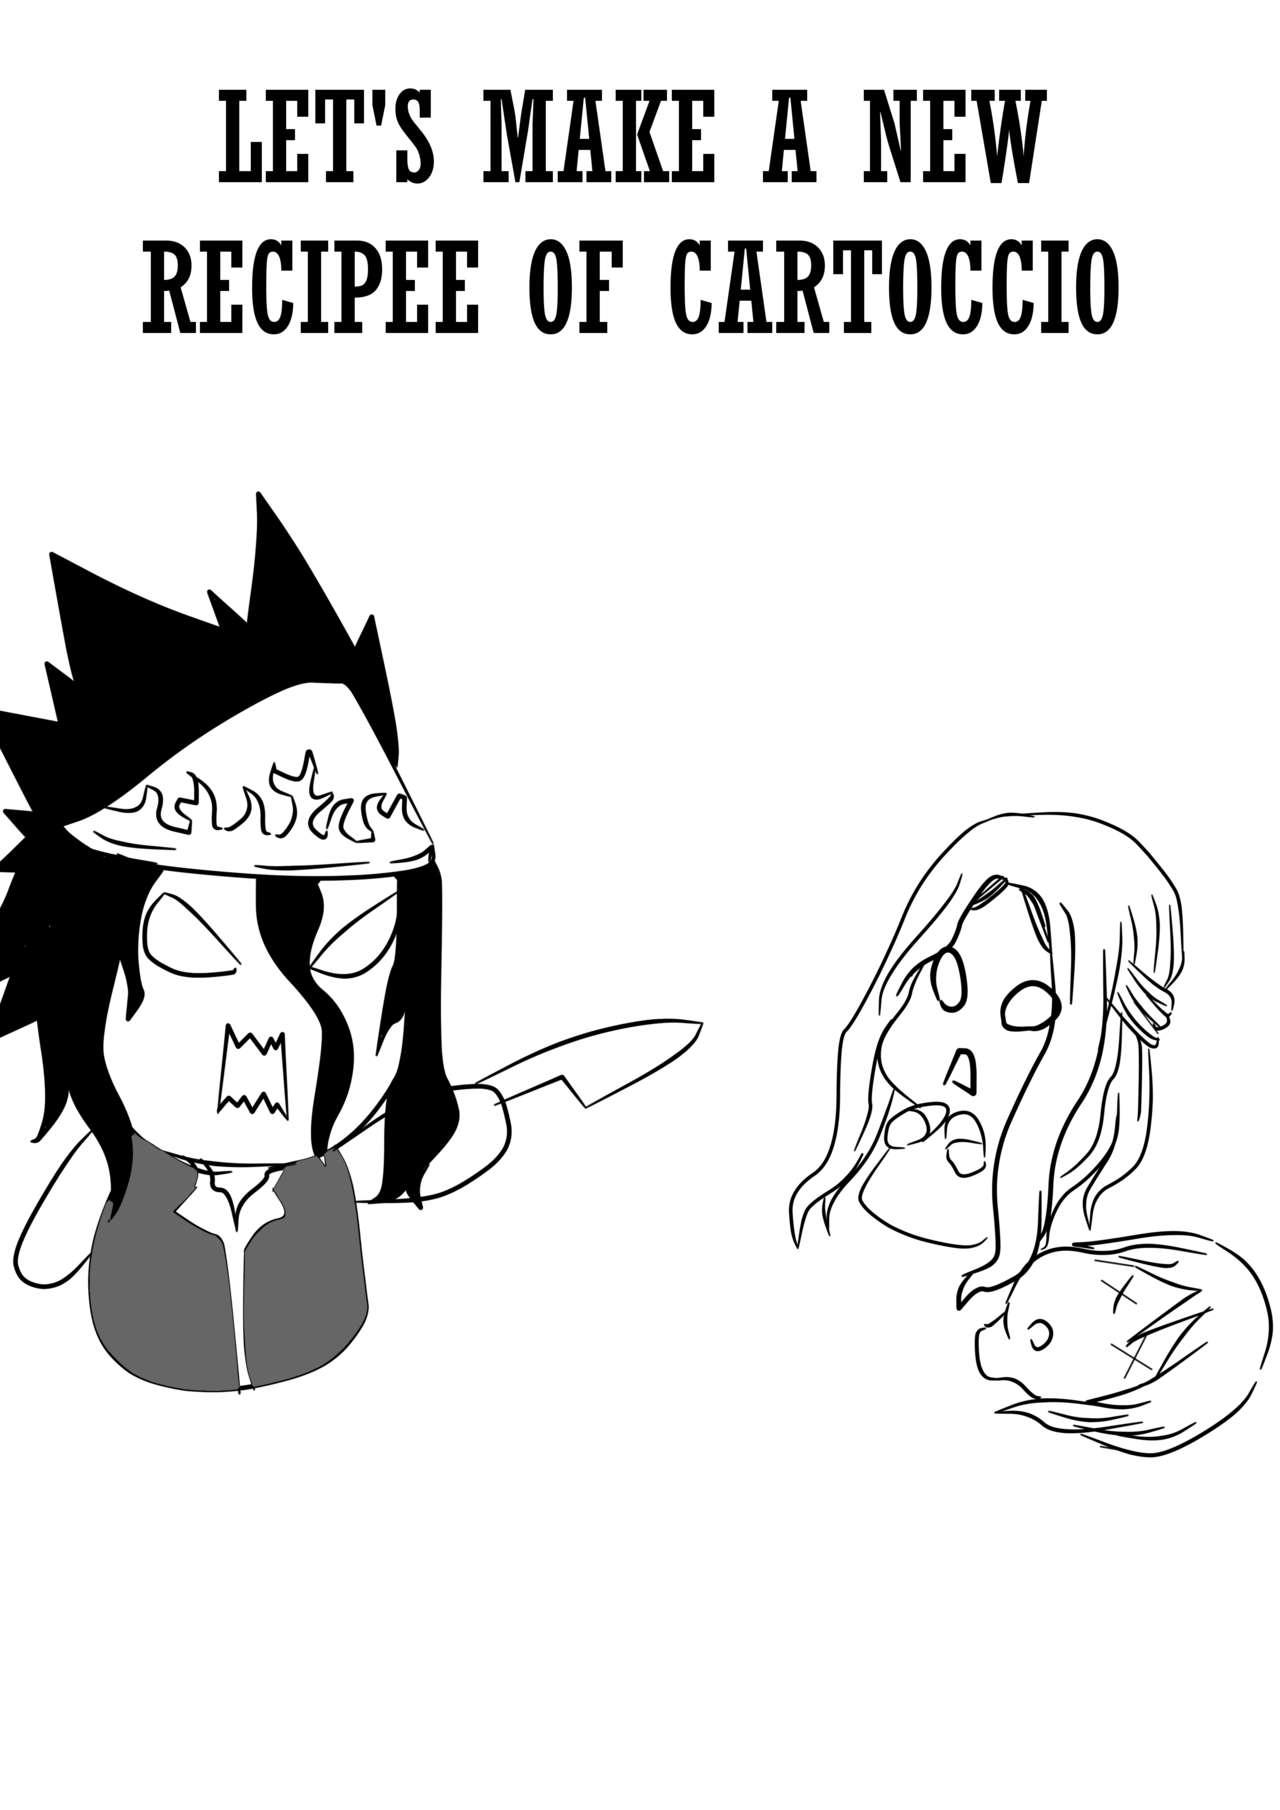 New Cartoccio Recipee 0